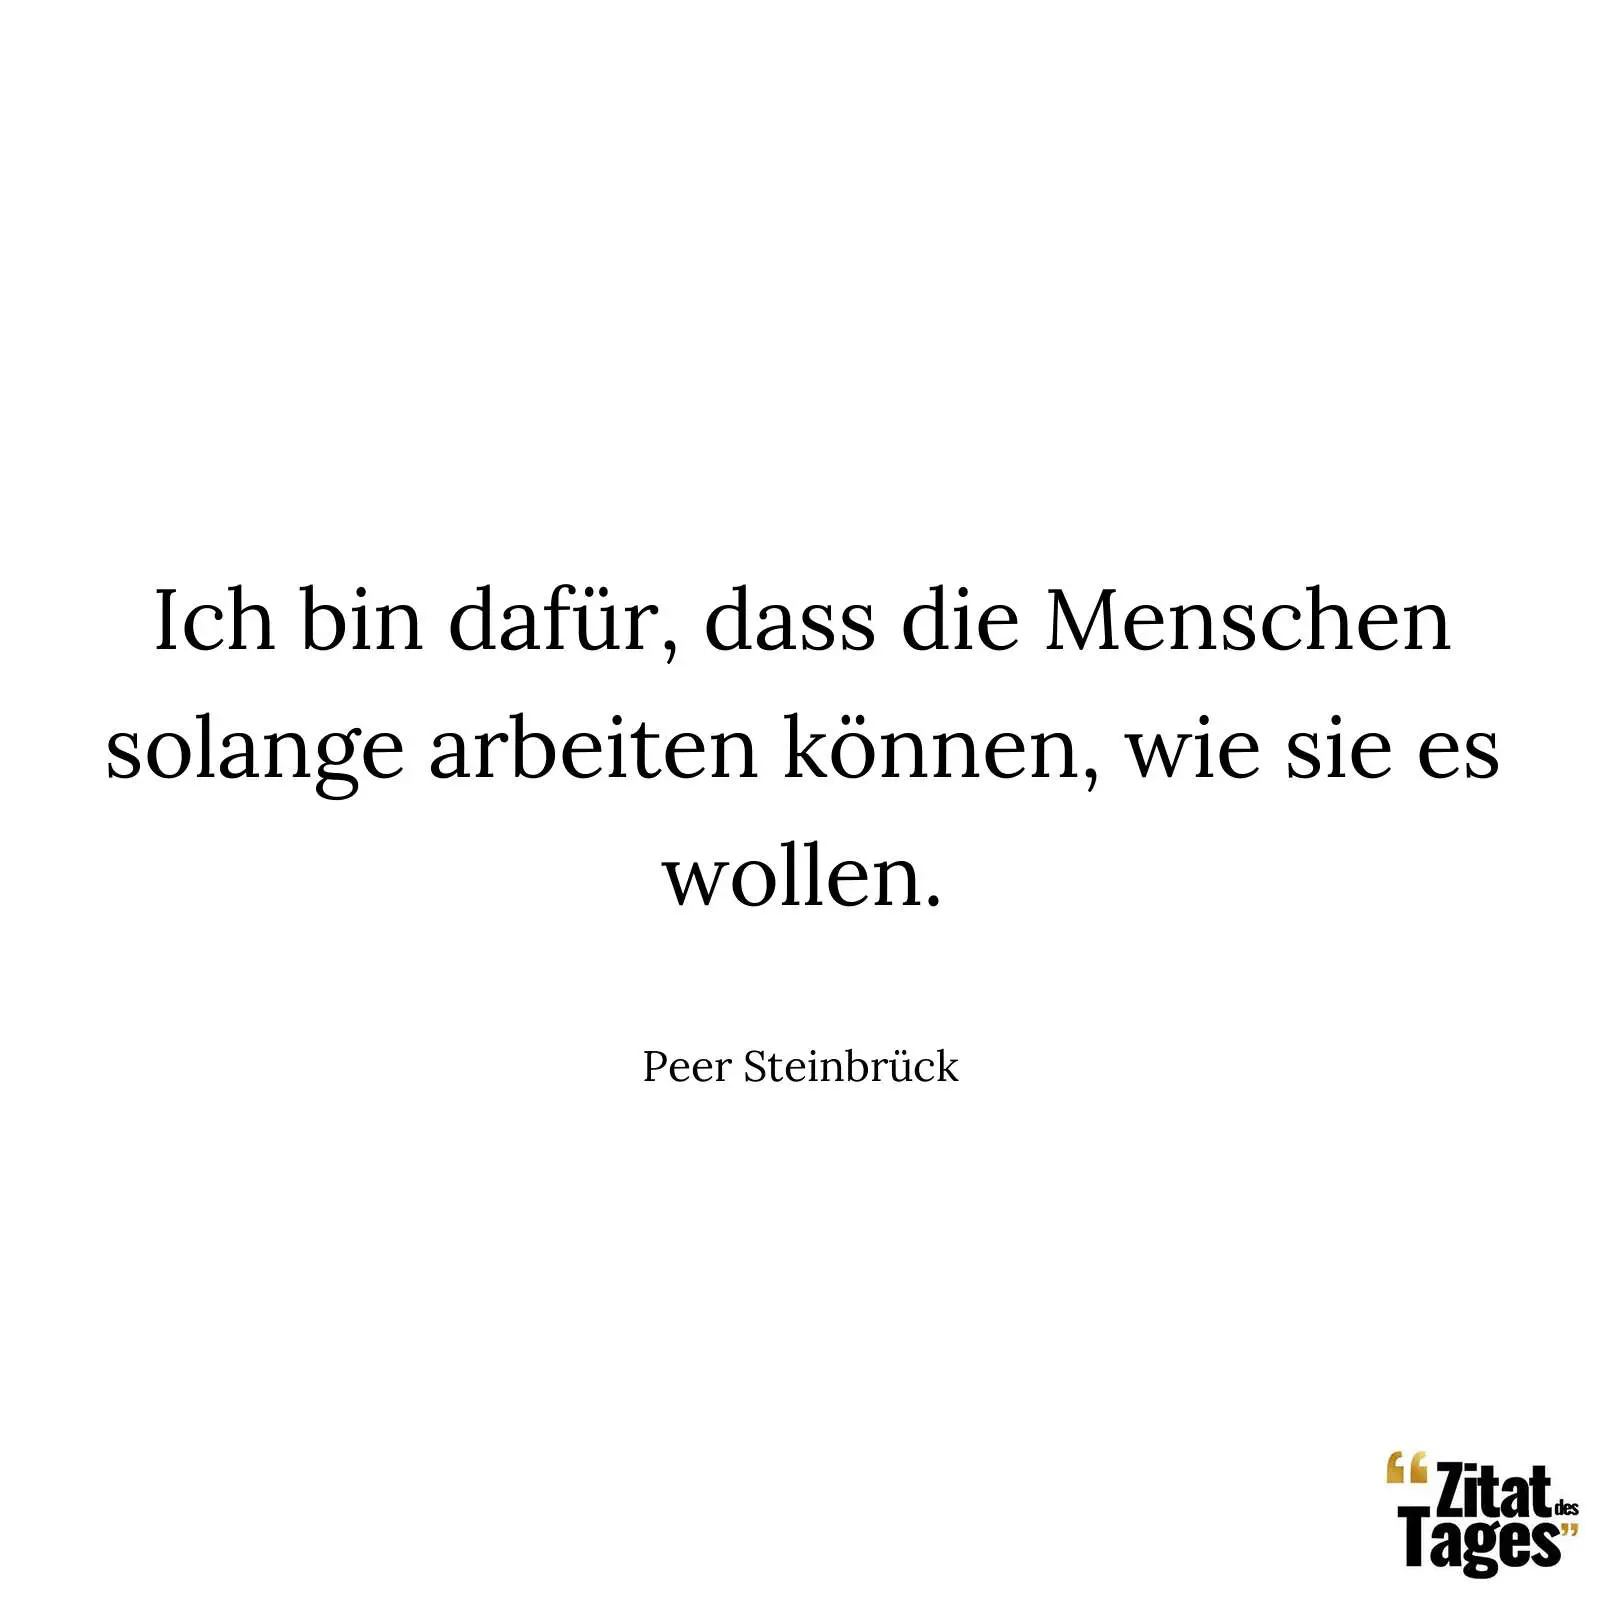 Ich bin dafür, dass die Menschen solange arbeiten können, wie sie es wollen. - Peer Steinbrück